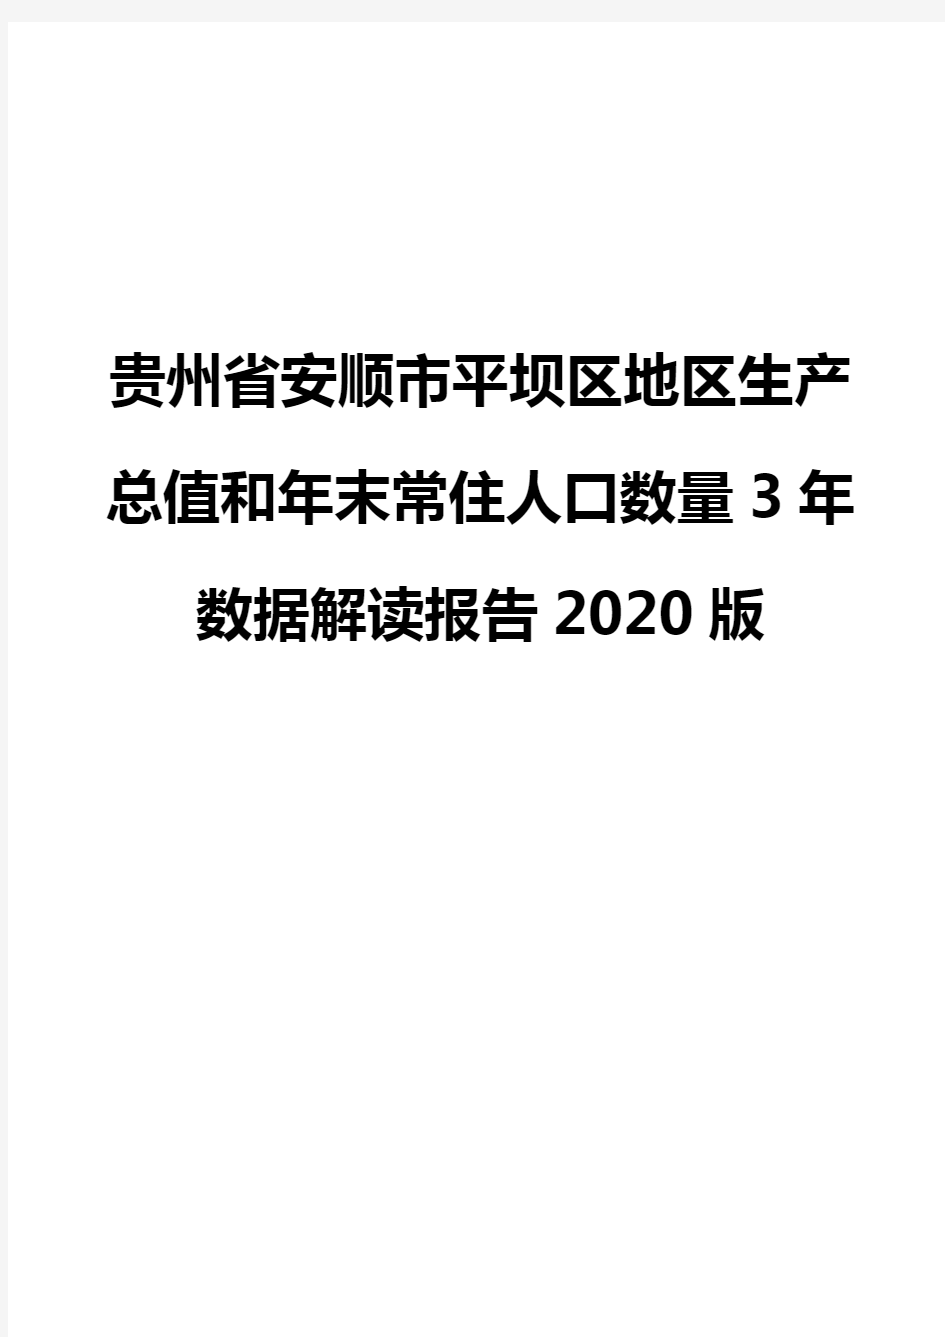 贵州省安顺市平坝区地区生产总值和年末常住人口数量3年数据解读报告2020版